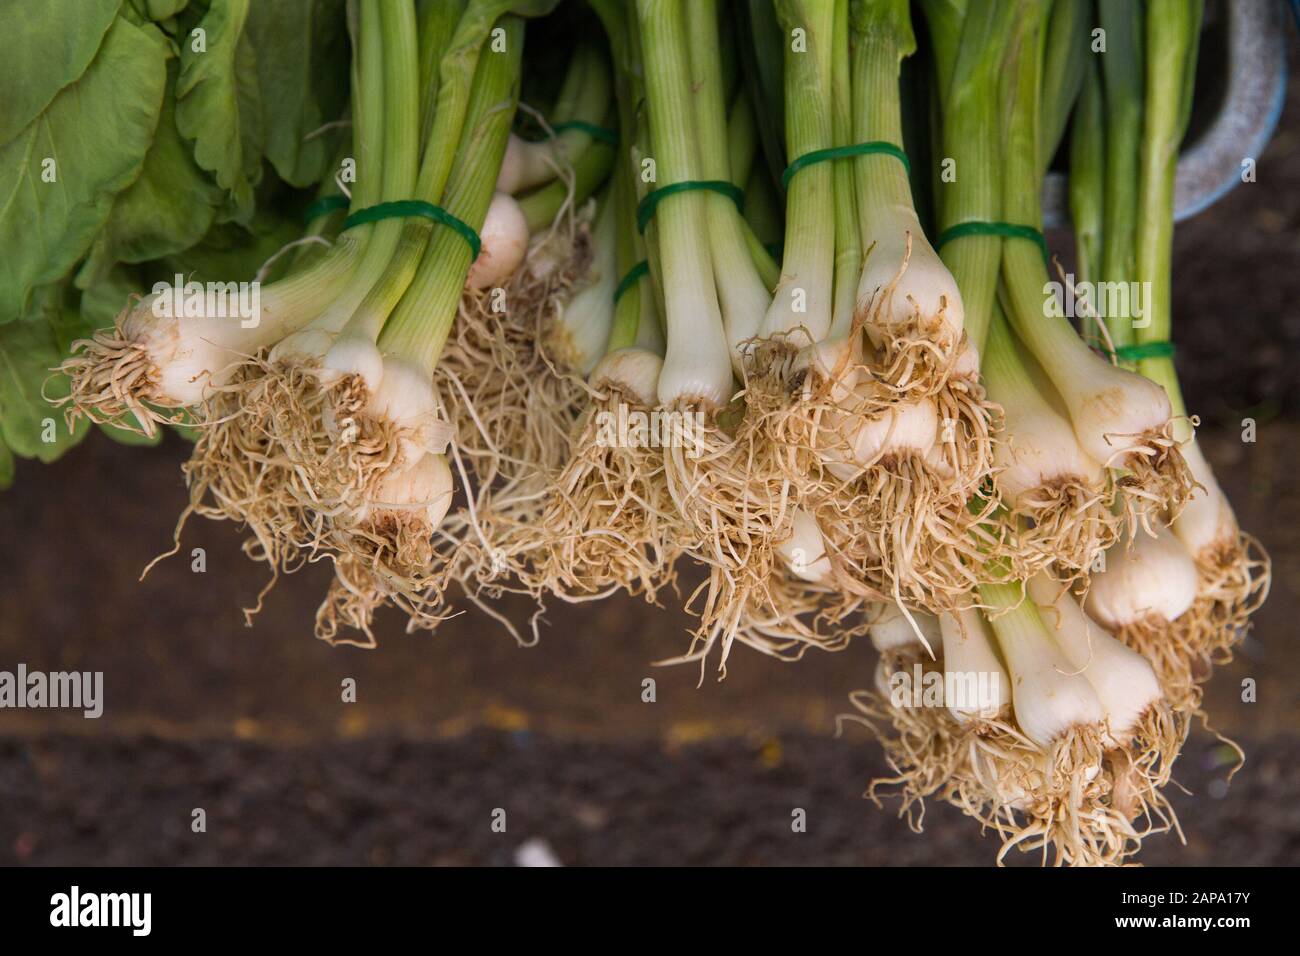 fresh vegetables Thailand Thai Asia asians Stock Photo